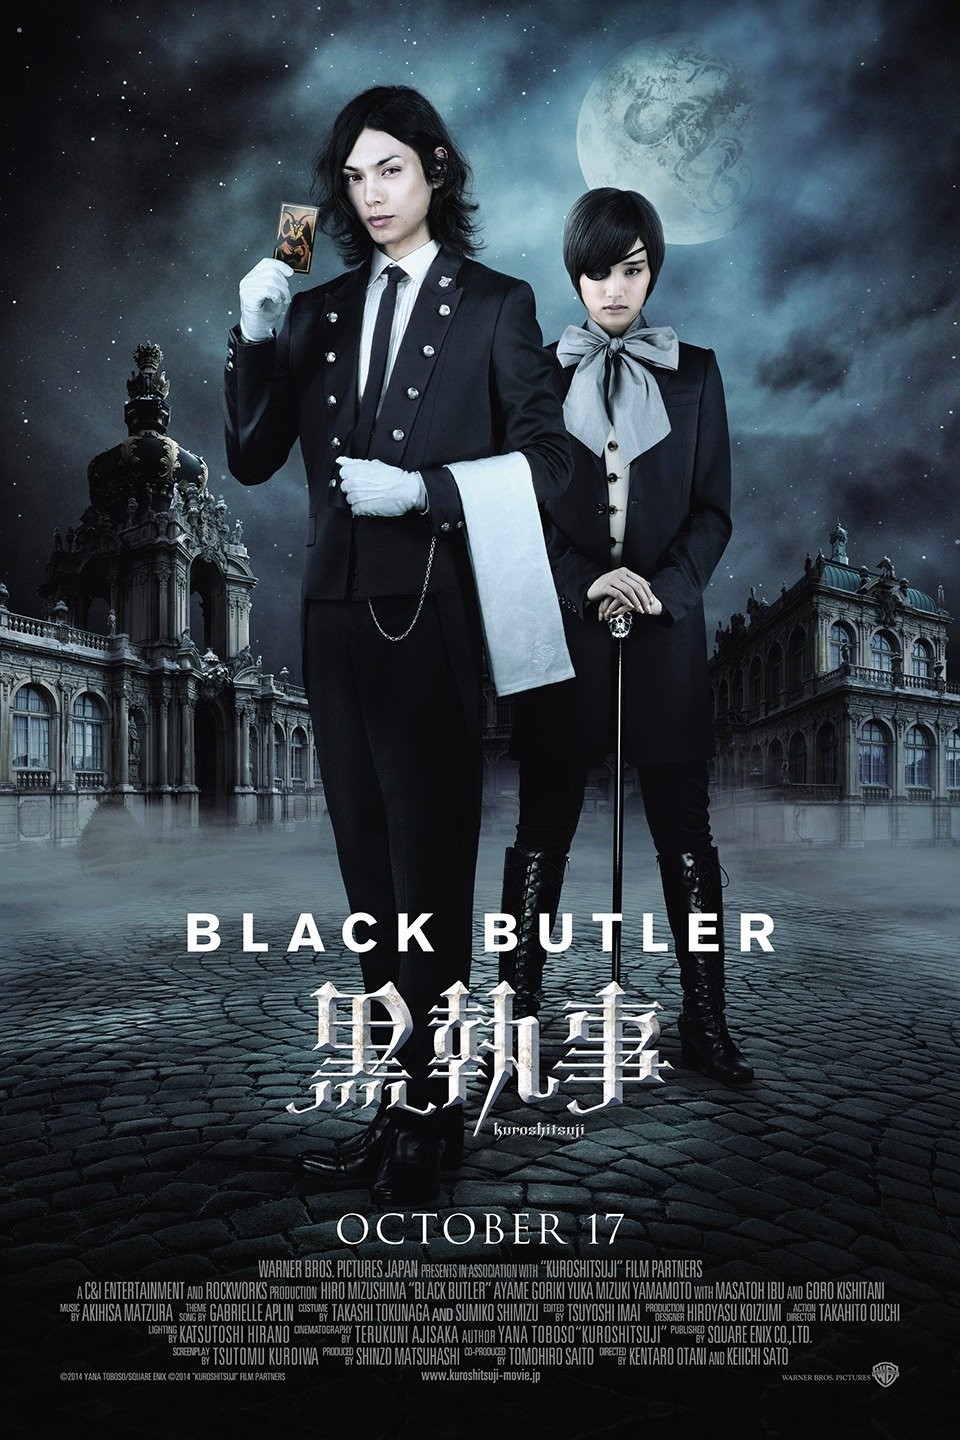 Black Butler Kuro Shitsuji (TV Episode 2010) - IMDb